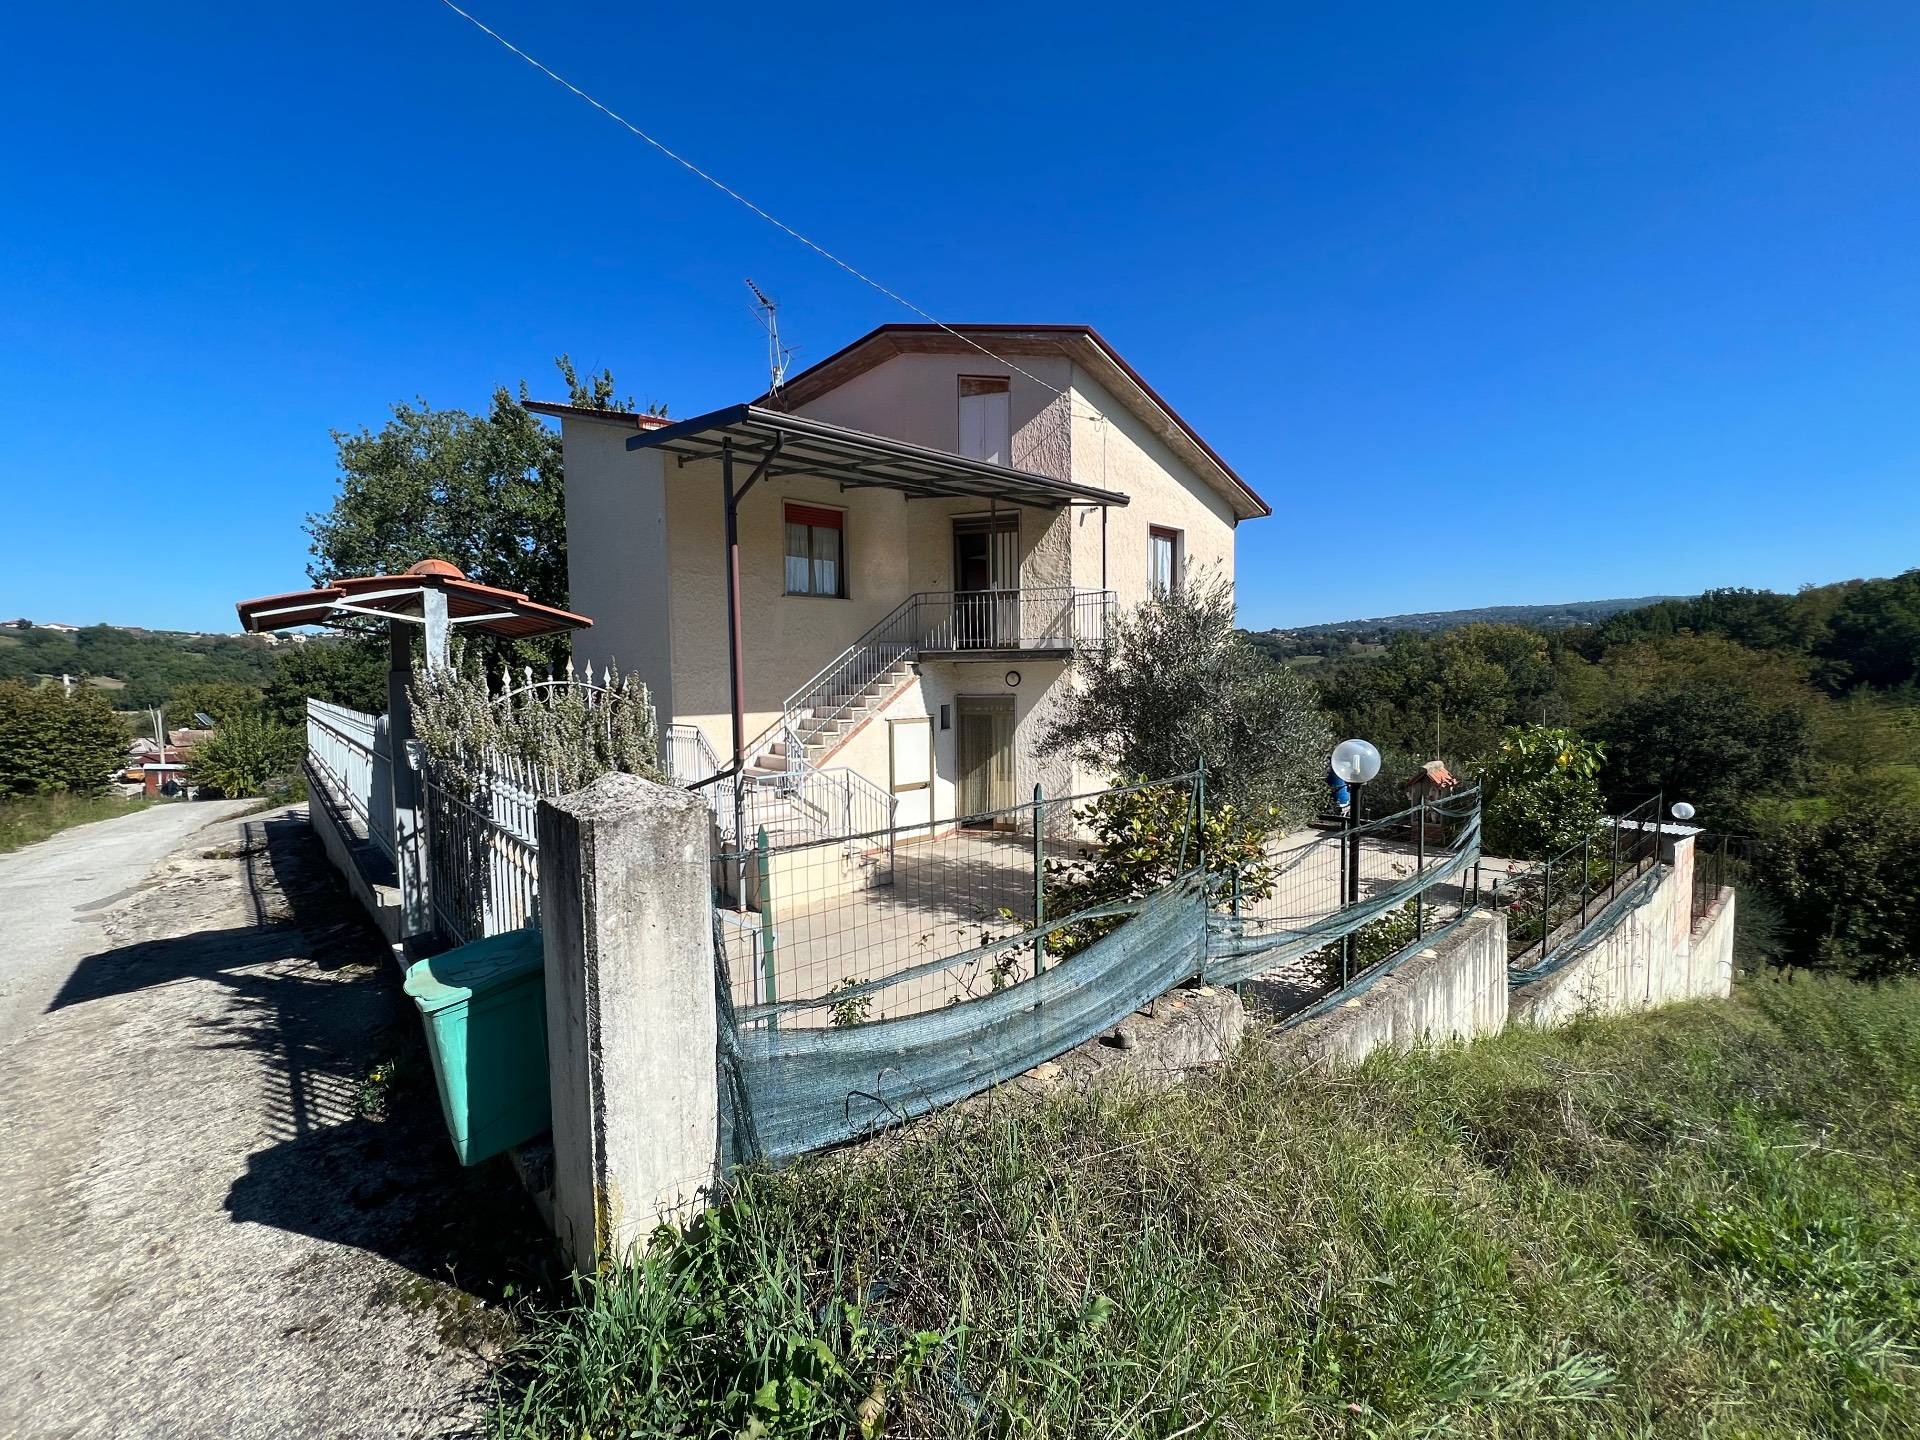 Villa in vendita a Taurasi, 6 locali, prezzo € 55.000 | PortaleAgenzieImmobiliari.it